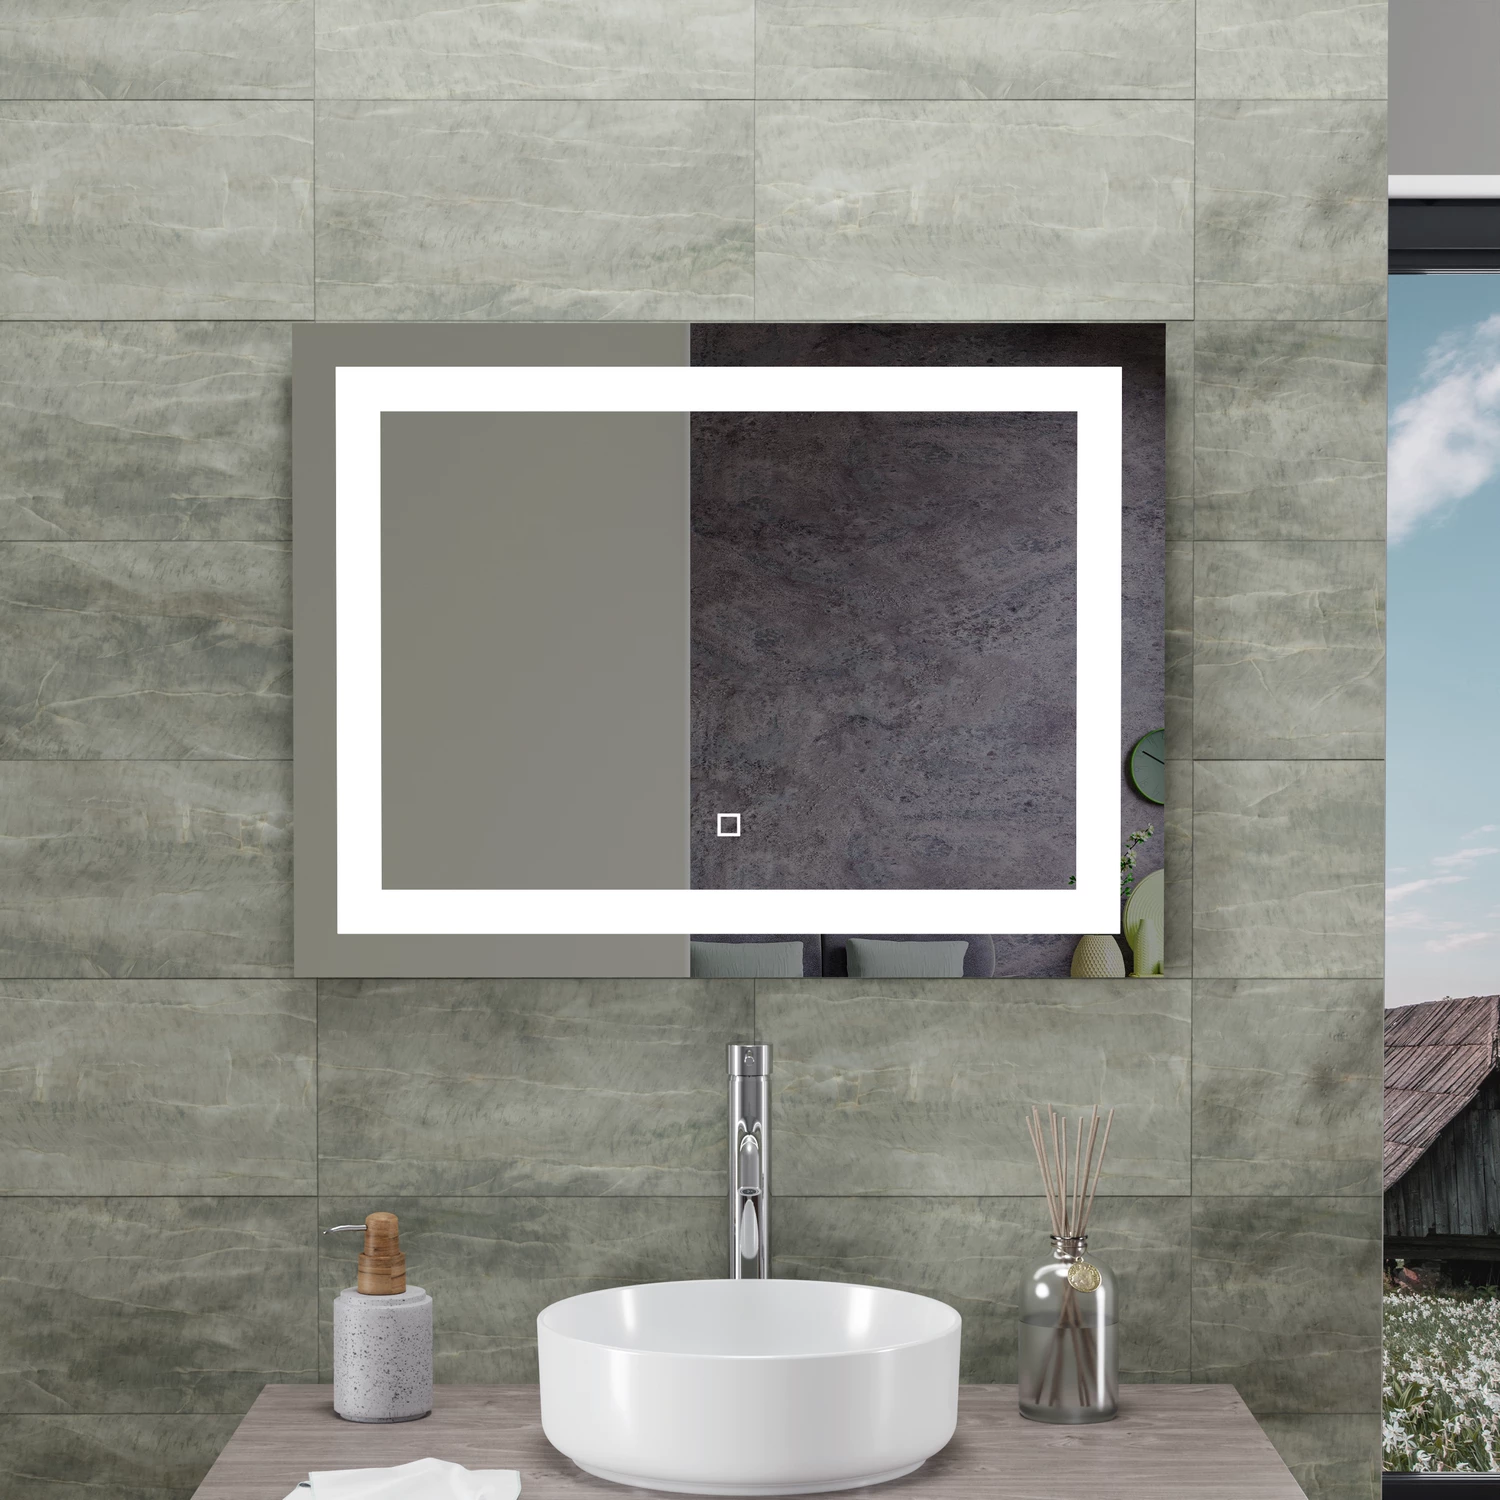 Specchio led bagno 70x90 cm con sensore touch-screen installazione reversibile | Tiaki